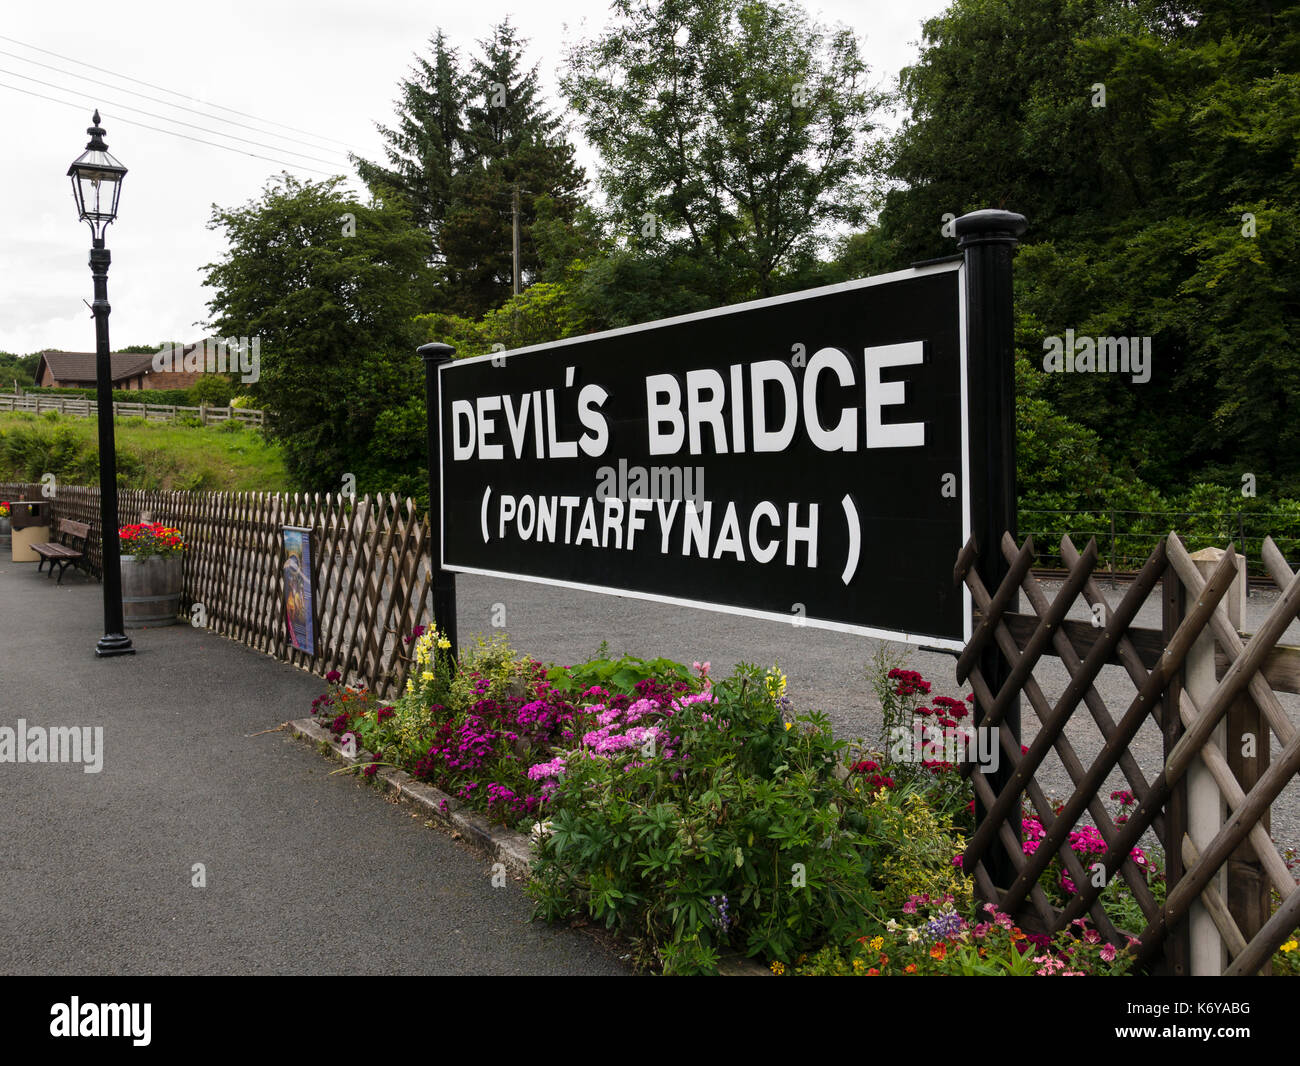 Devil's Bridge train station, Pontarfynach, Aberystwyth, Wales, UK. Stock Photo